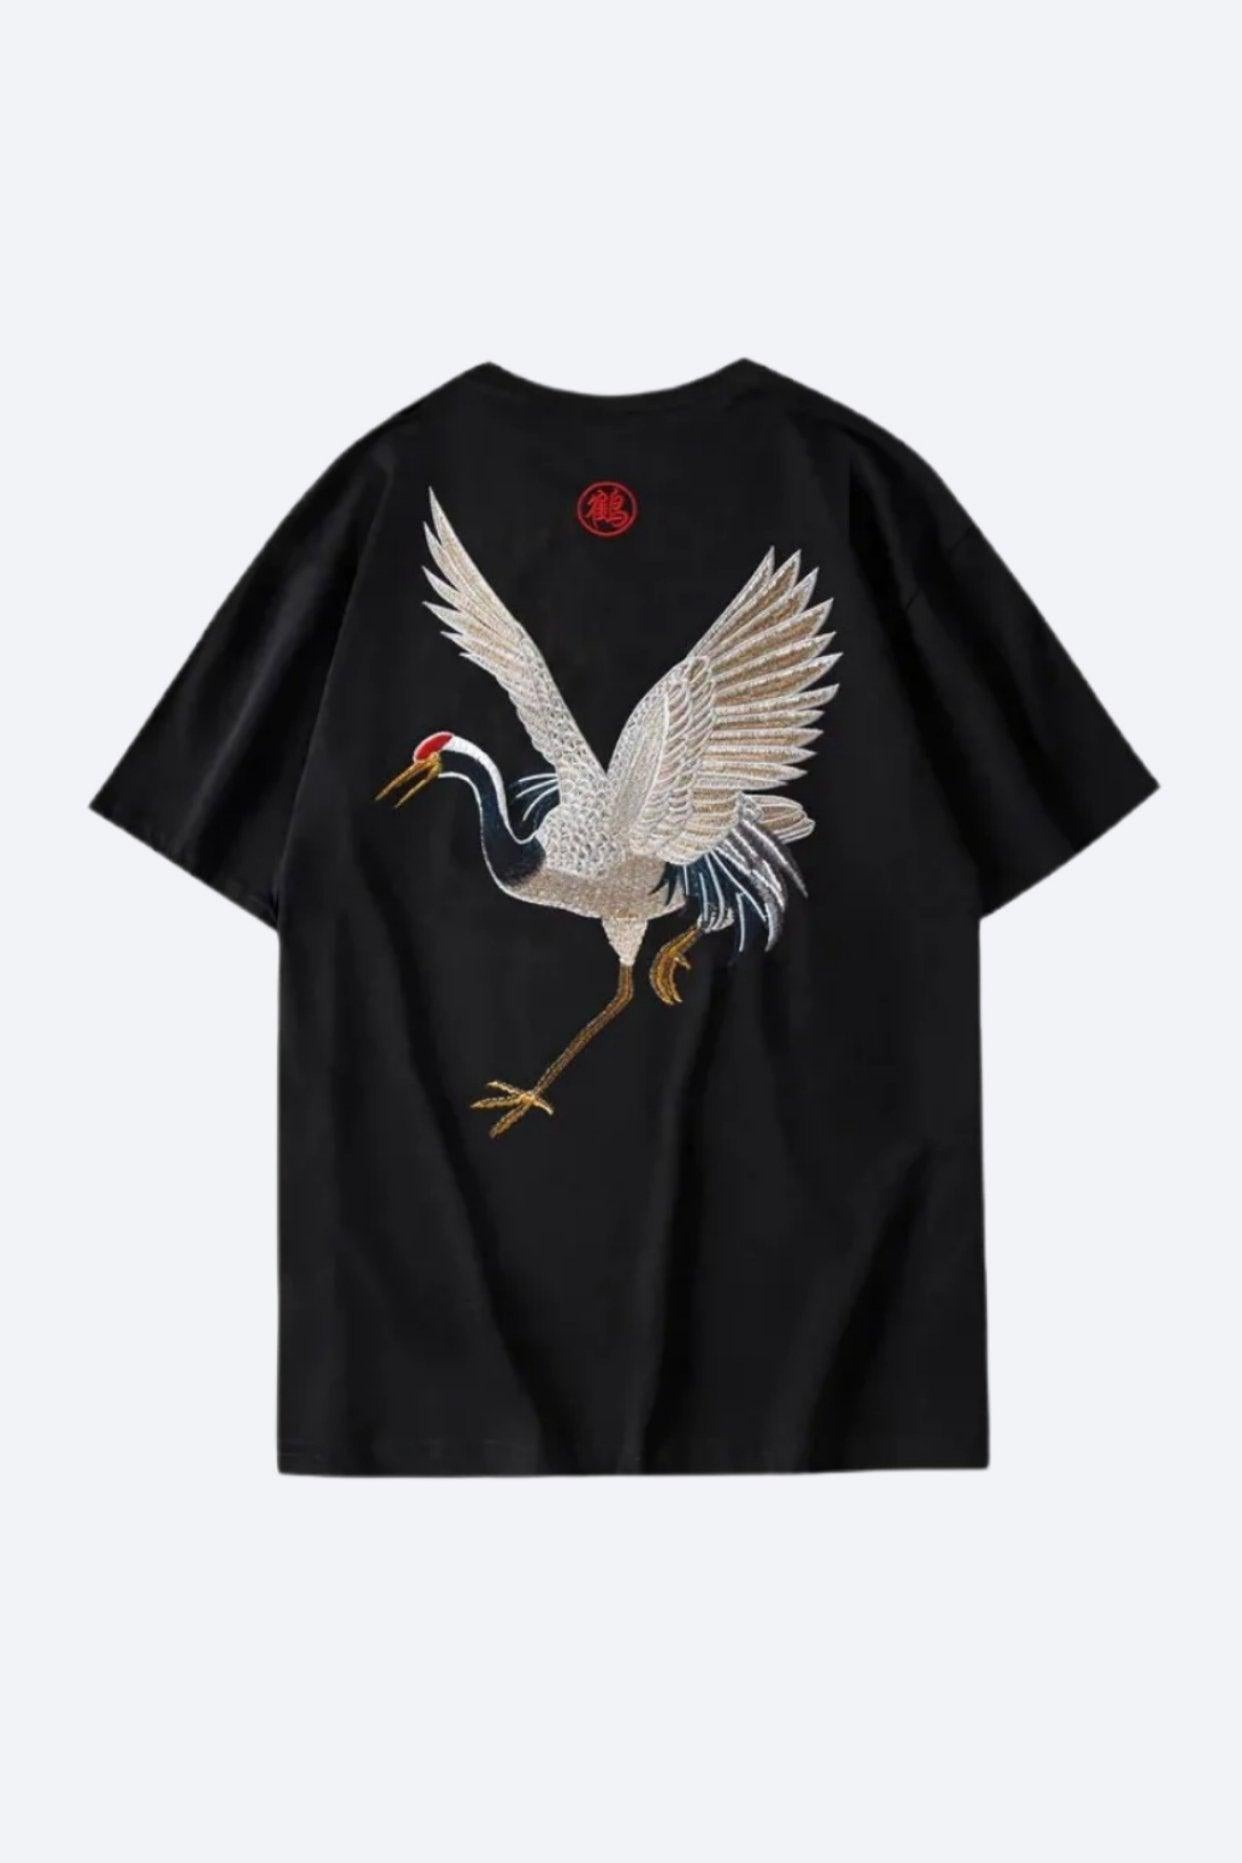 Gold Crane T-Shirt Streetwear Brand Techwear Combat Tactical YUGEN THEORY